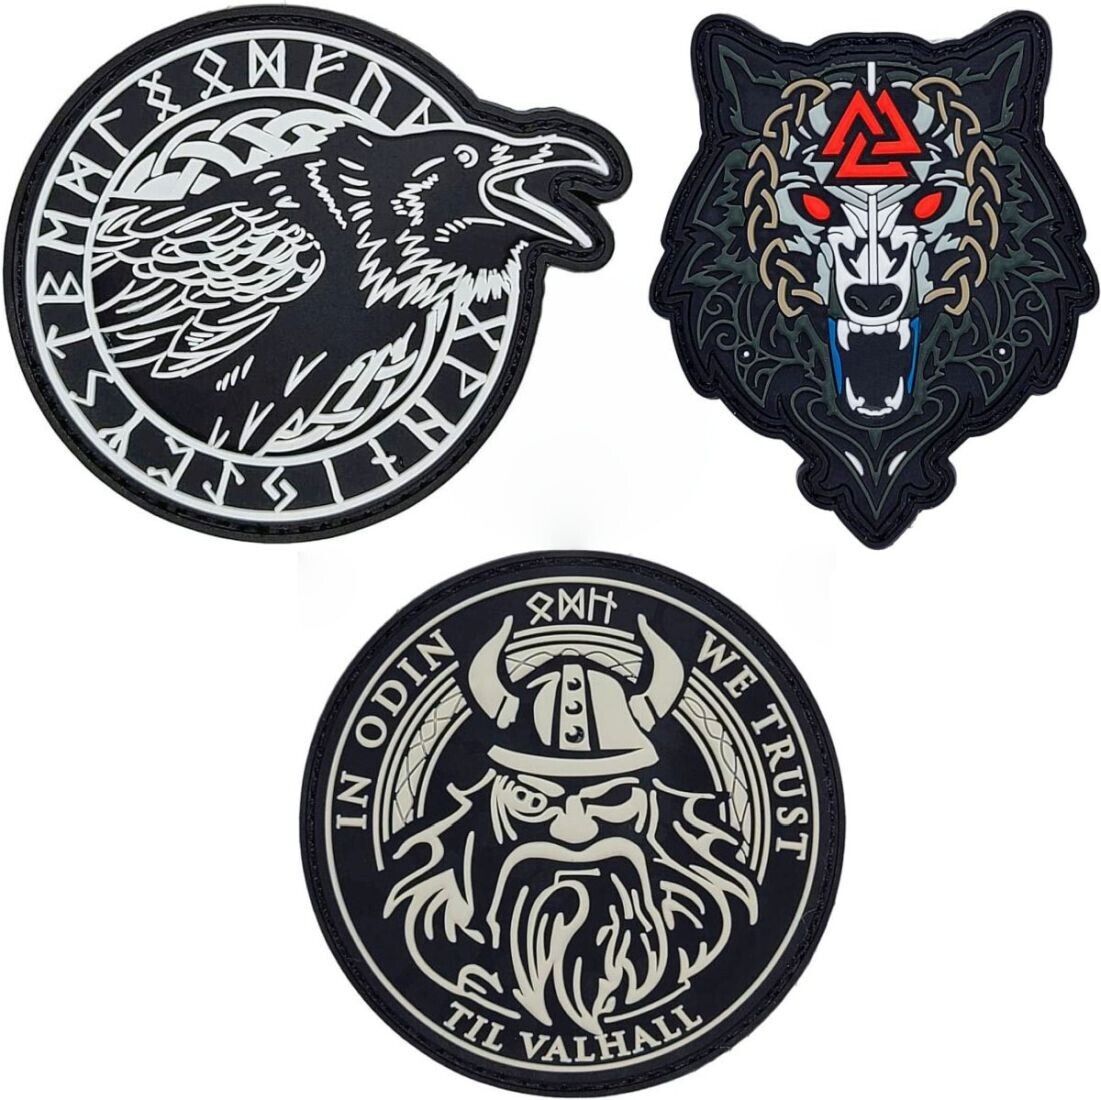 Odin We Trust Odin\'s Ravens Wolf Walknut PVC RUBBER PATCH |3PC HOOK BACKING